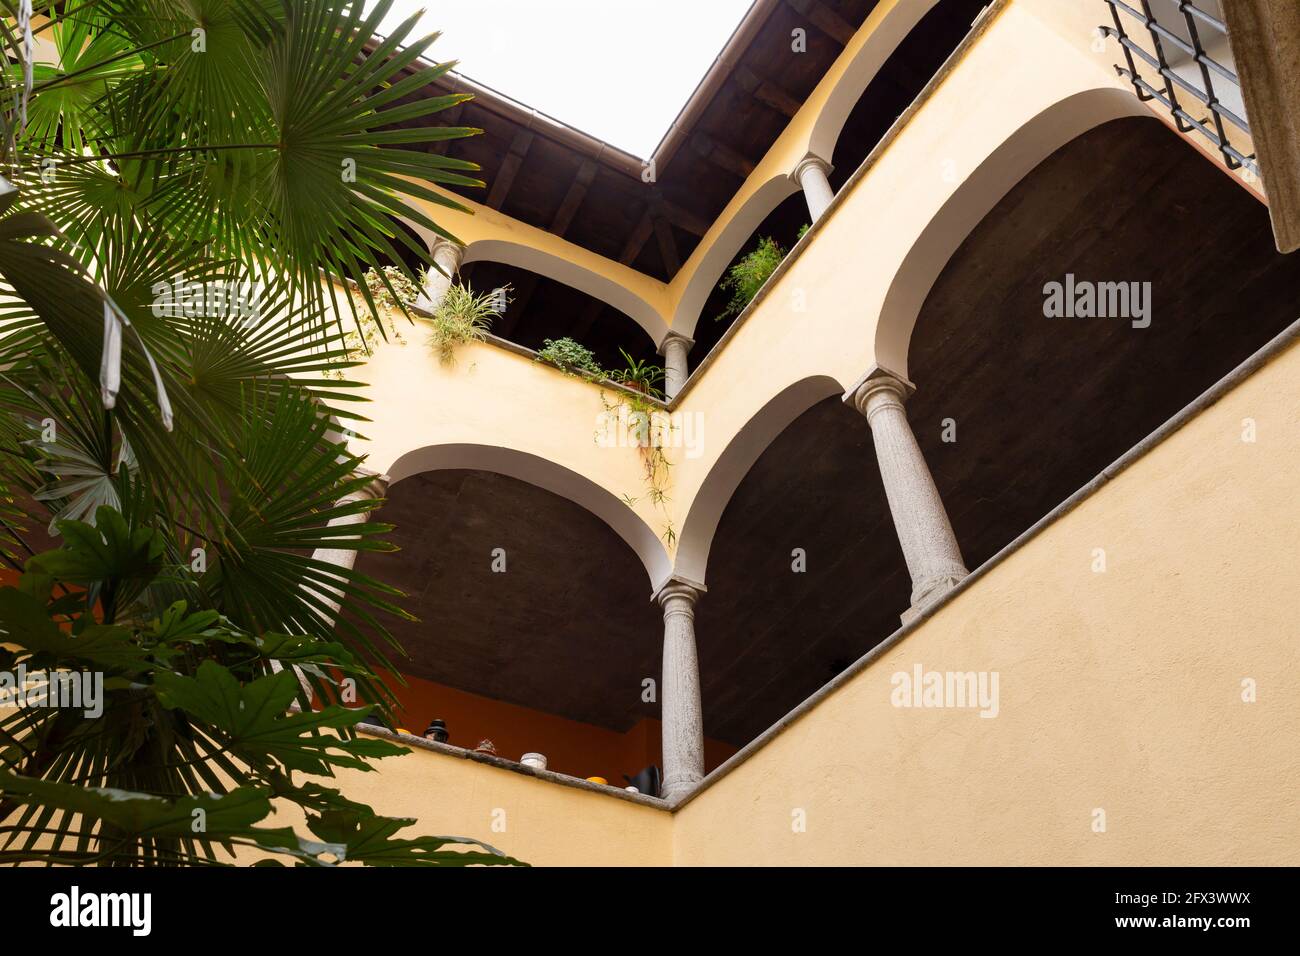 Suisse, Locarno, 31 août 20. Vue de dessous sur les balcons avec colonnes Banque D'Images